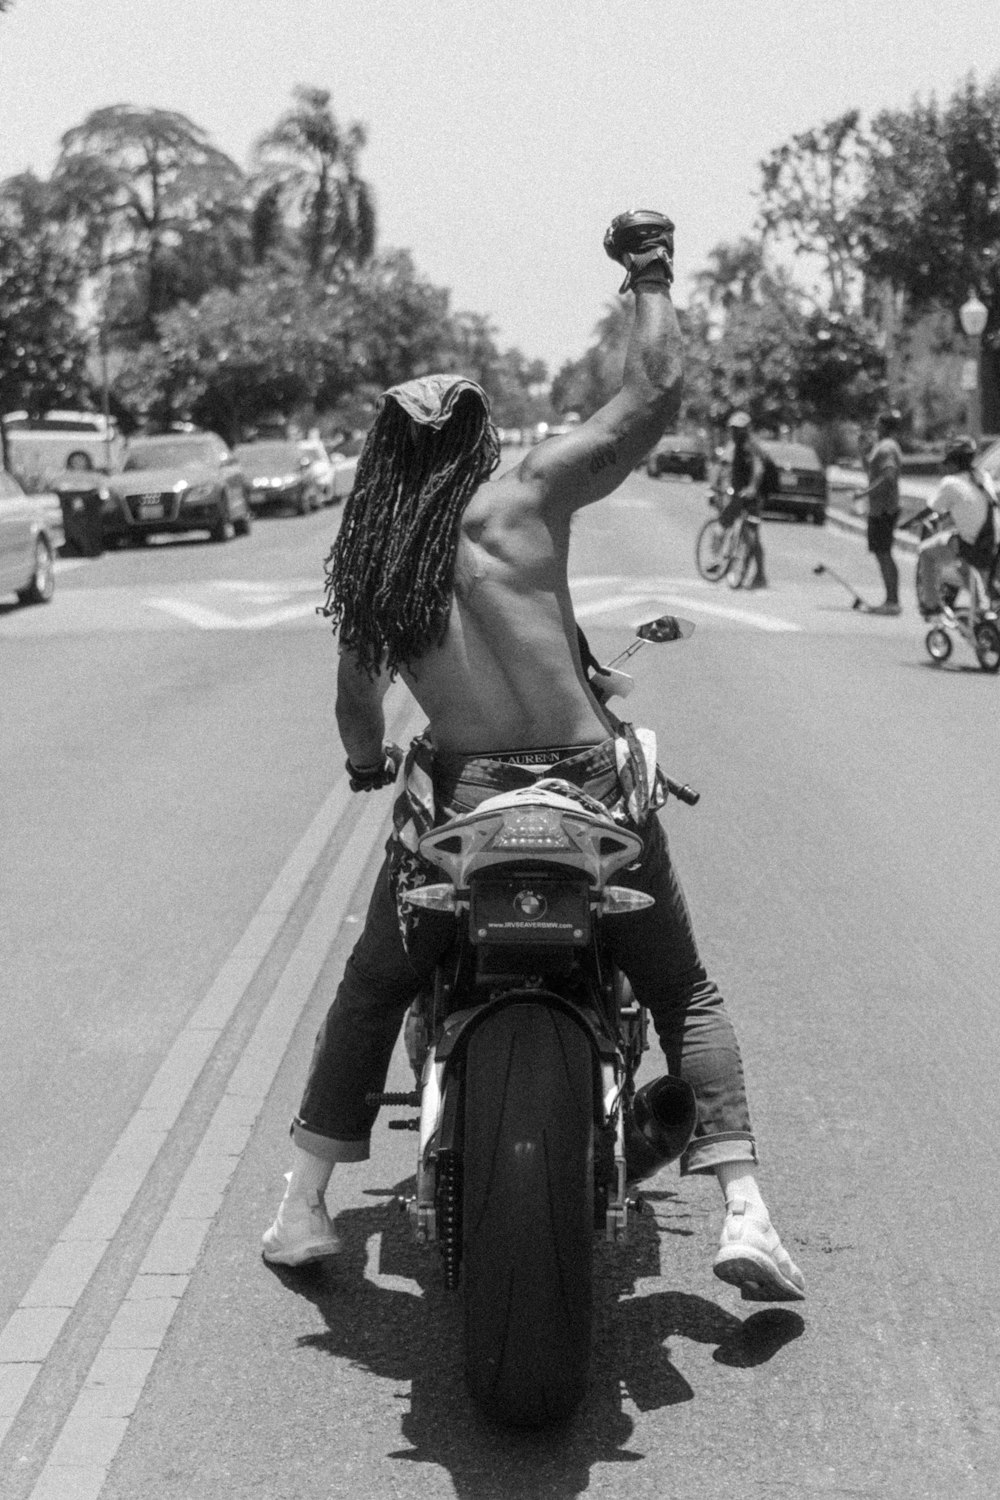 foto en escala de grises de una mujer montando una motocicleta en la carretera